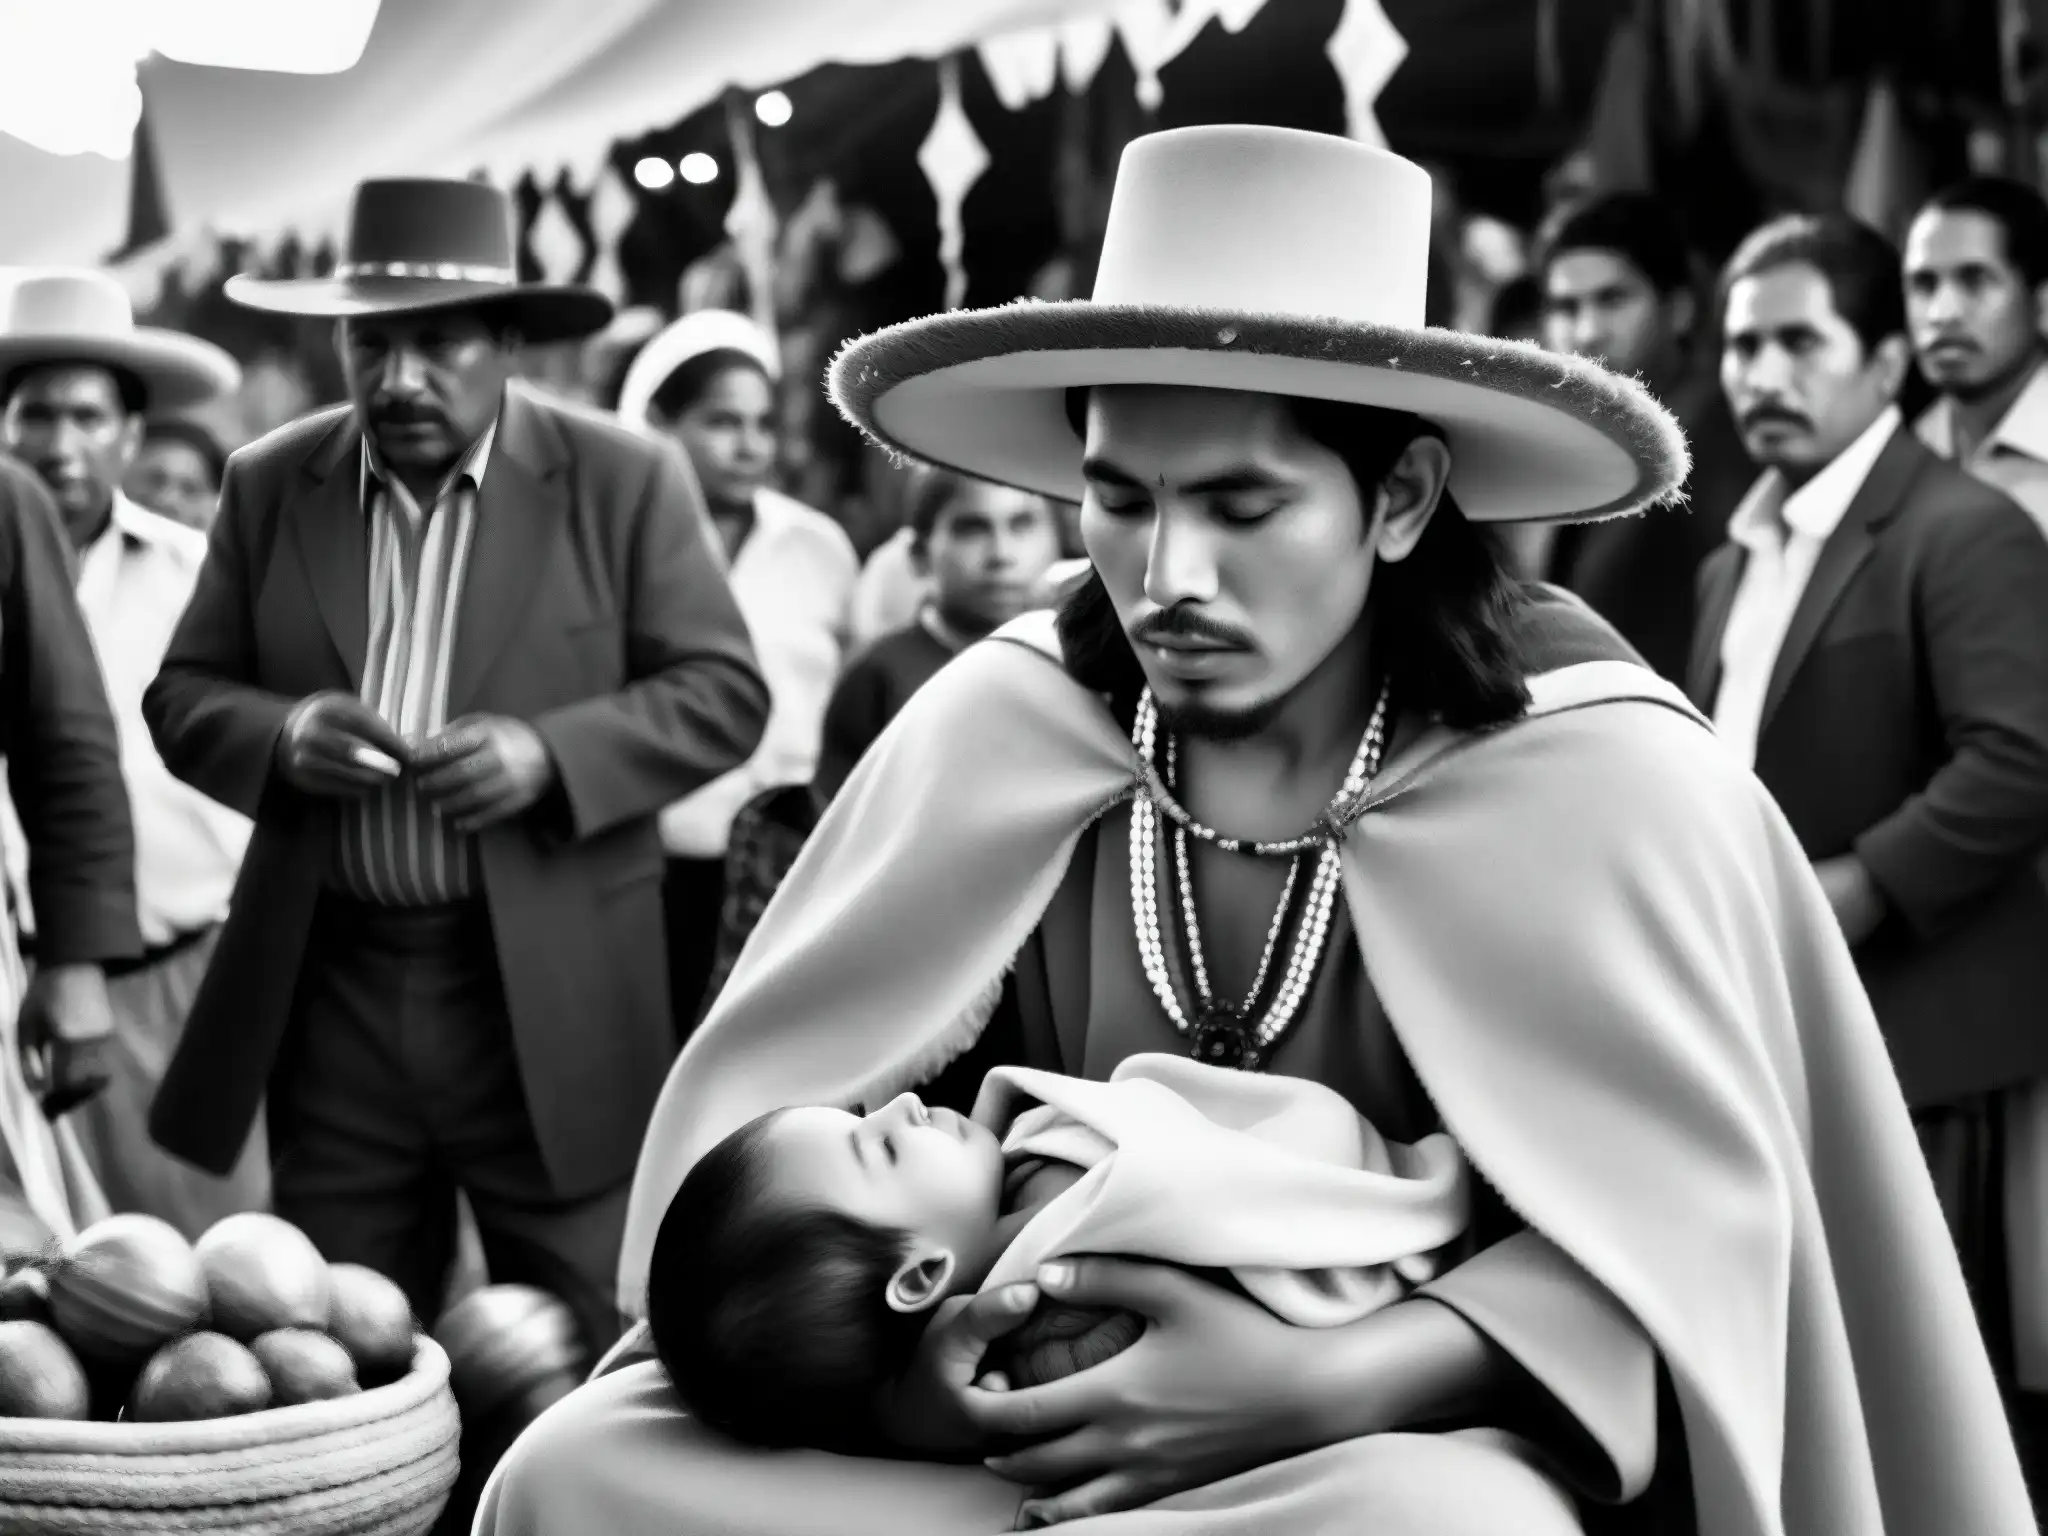 El Niño Fidencio cura a un niño en un mercado mexicano, rodeado de espectadores asombrados